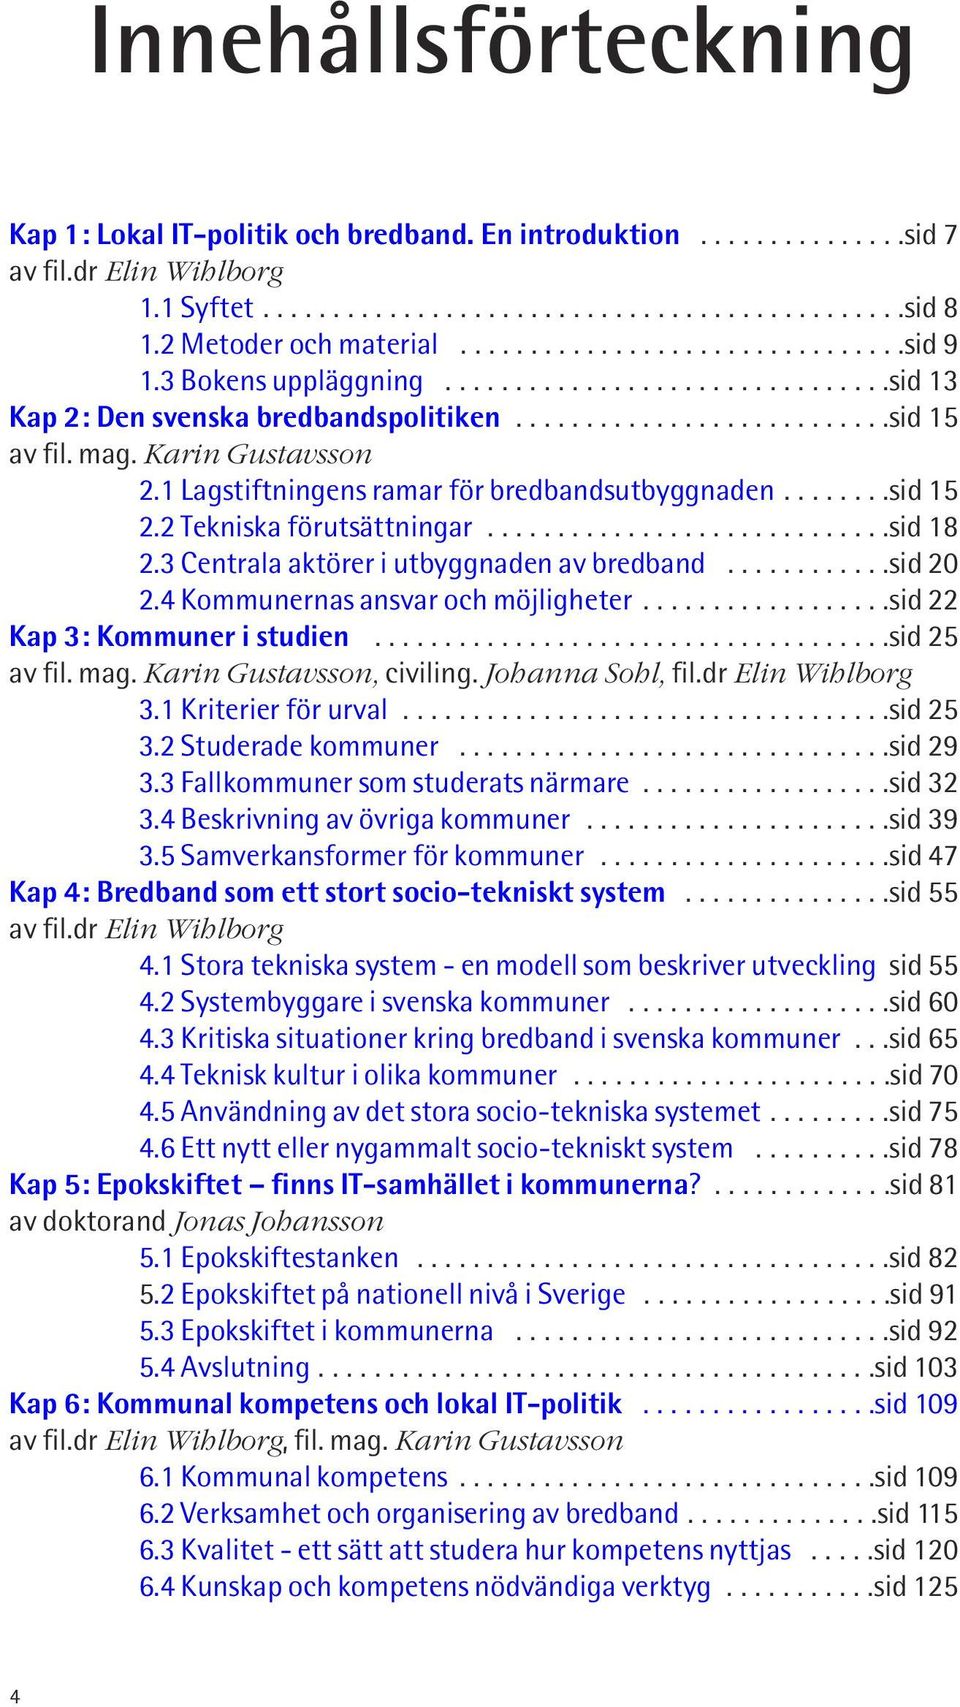 mag. Karin Gustavsson 2.1 Lagstiftningens ramar för bredbandsutbyggnaden........sid 15 2.2 Tekniska förutsättningar.............................sid 18 2.3 Centrala aktörer i utbyggnaden av bredband.